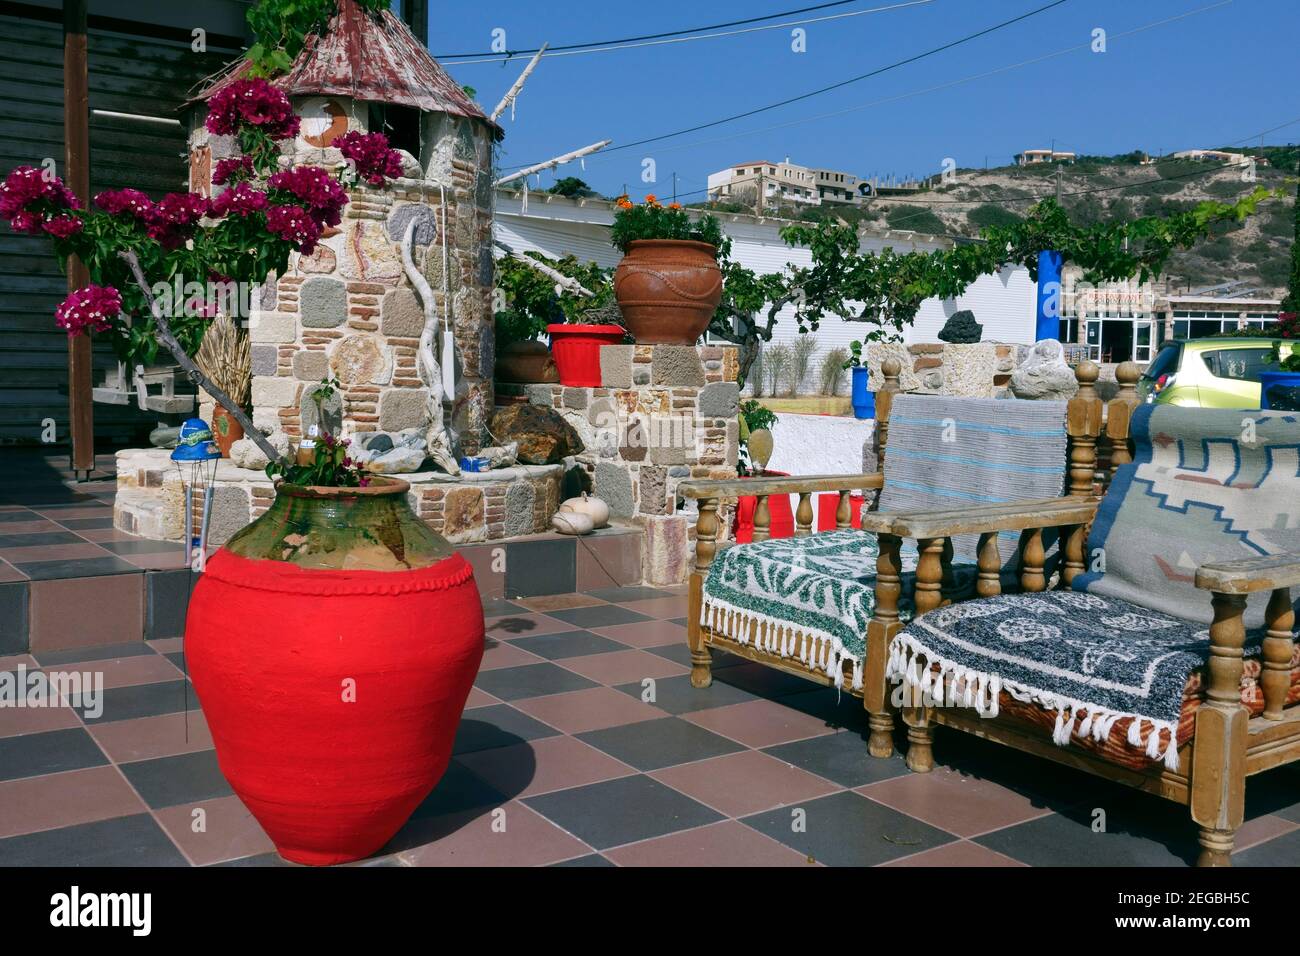 Terrazza giardino esterno di una casa tipica sul greco isola di Kos Foto Stock